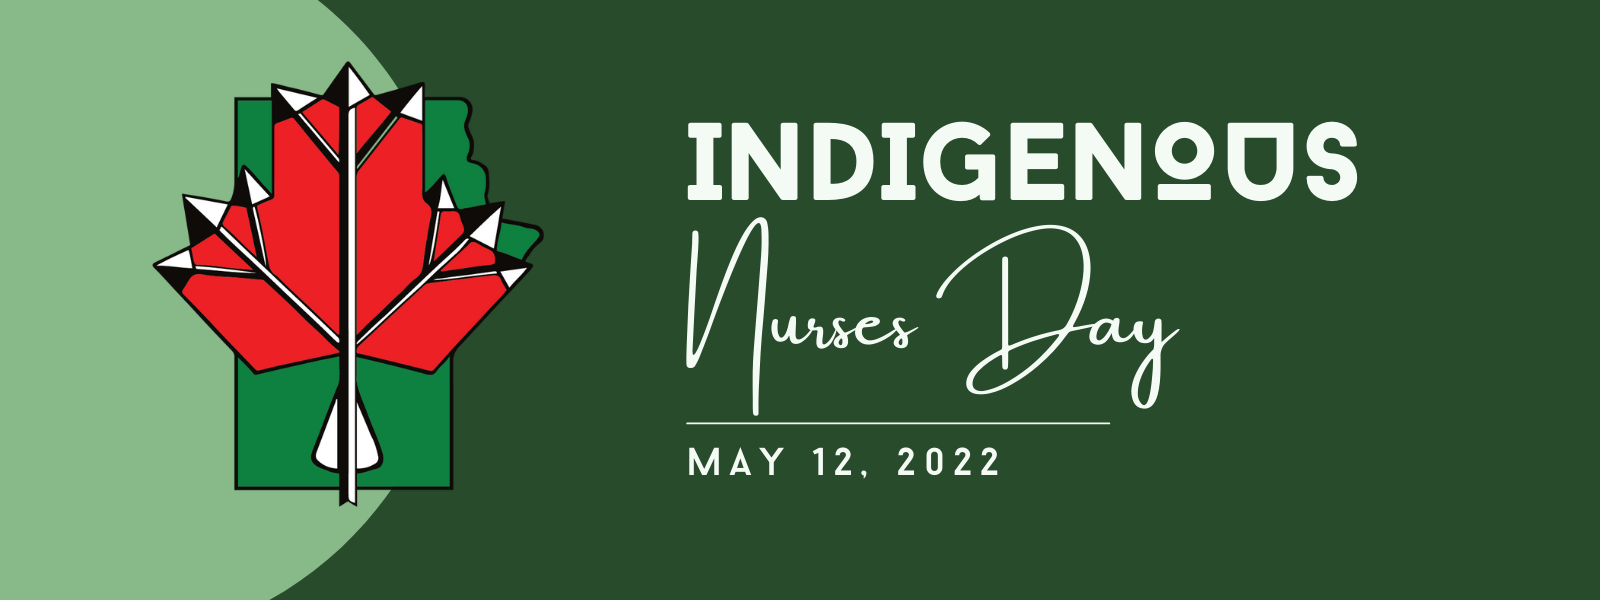 SERDC recognizes Indigenous Nurses Day in Manitoba SERDC